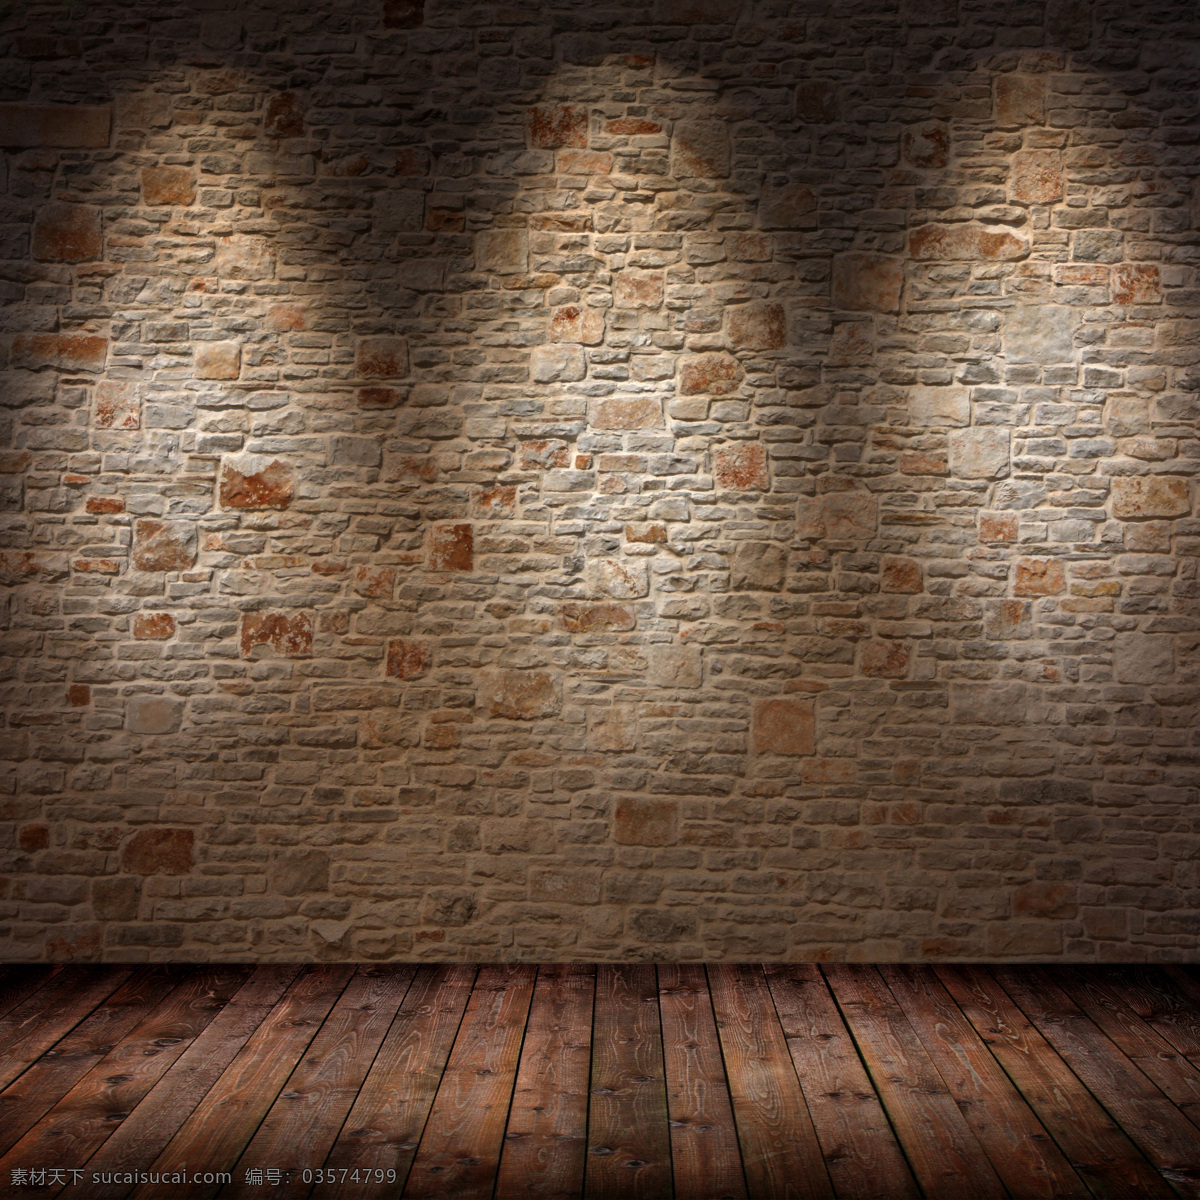 怀旧 墙壁 地板 室内设计 复古 古典 木板 石头墙 砖头墙 灯光 室内墙壁设计 环境设计